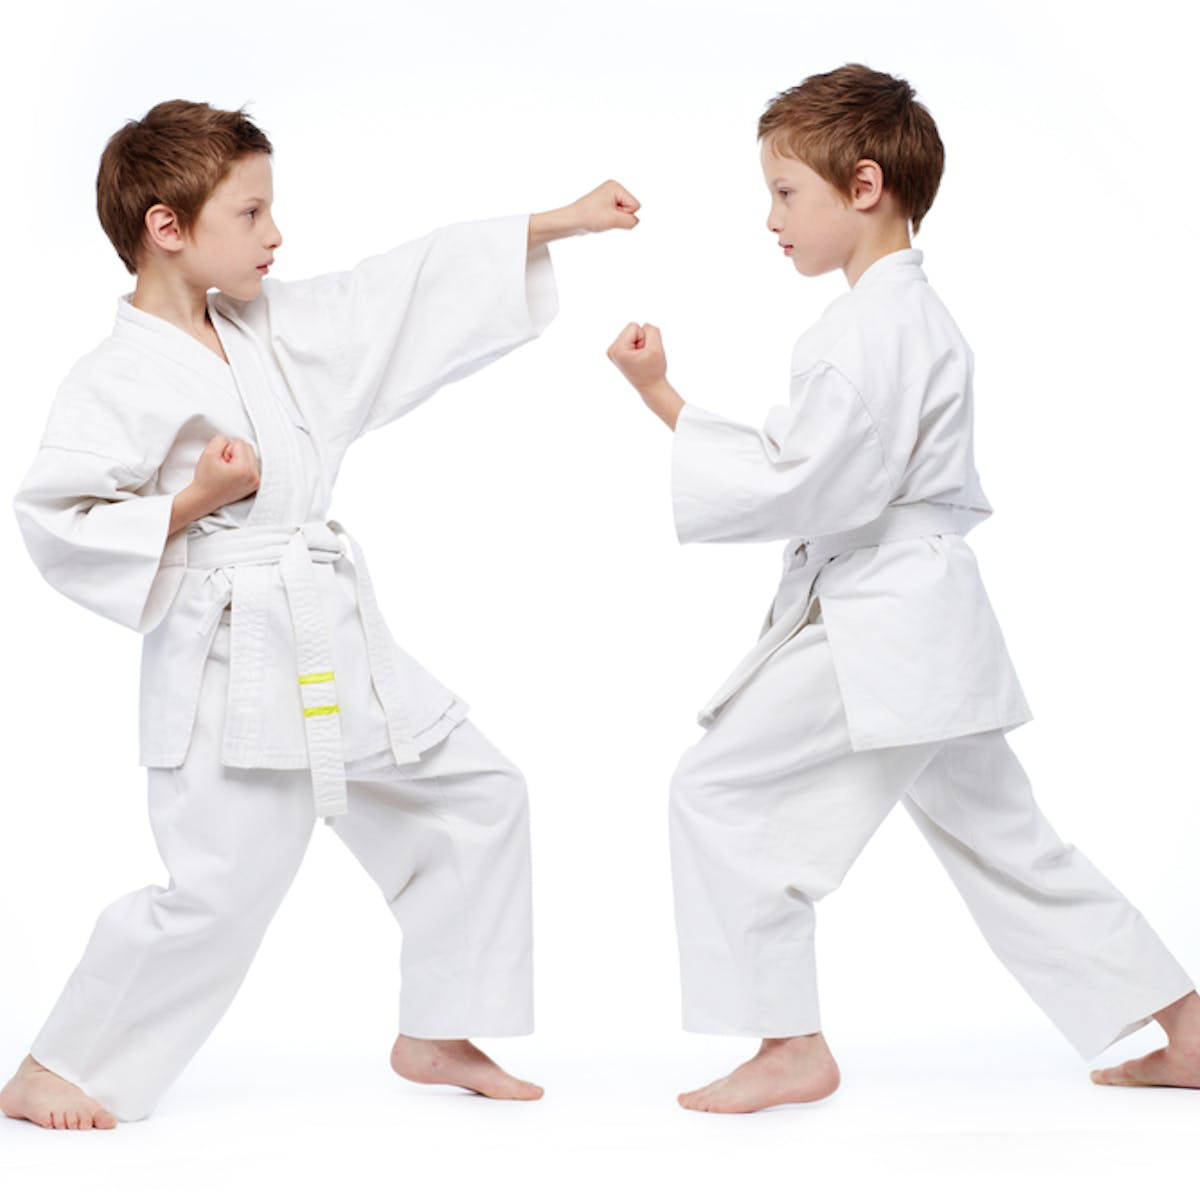 Karate Kids I Hvid Aestetisk Udstyr Wallpaper